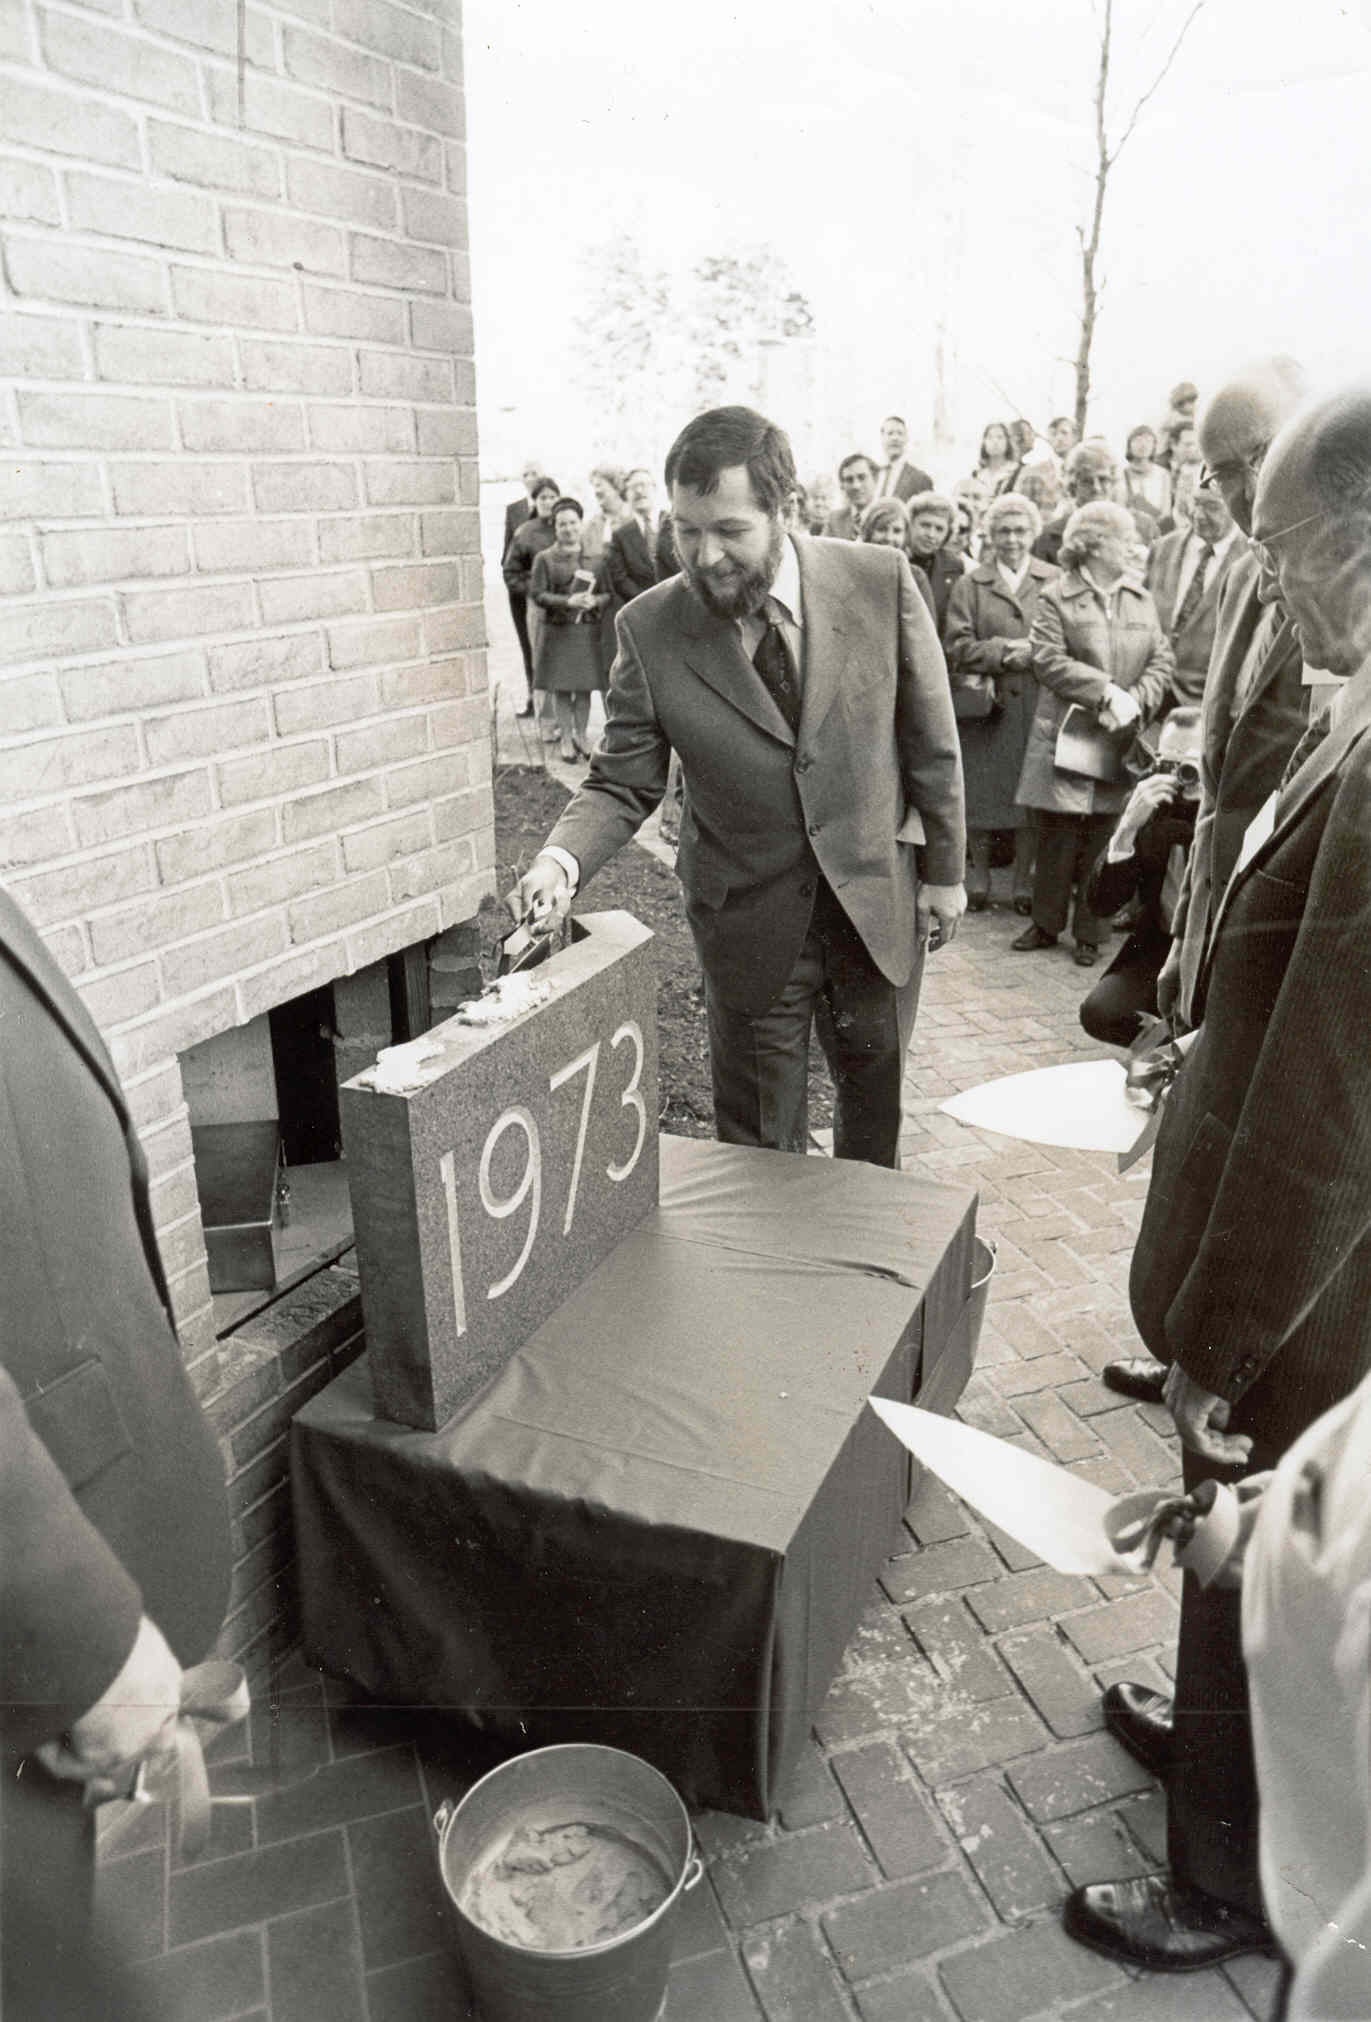 1973 cornerstone at Marple campus